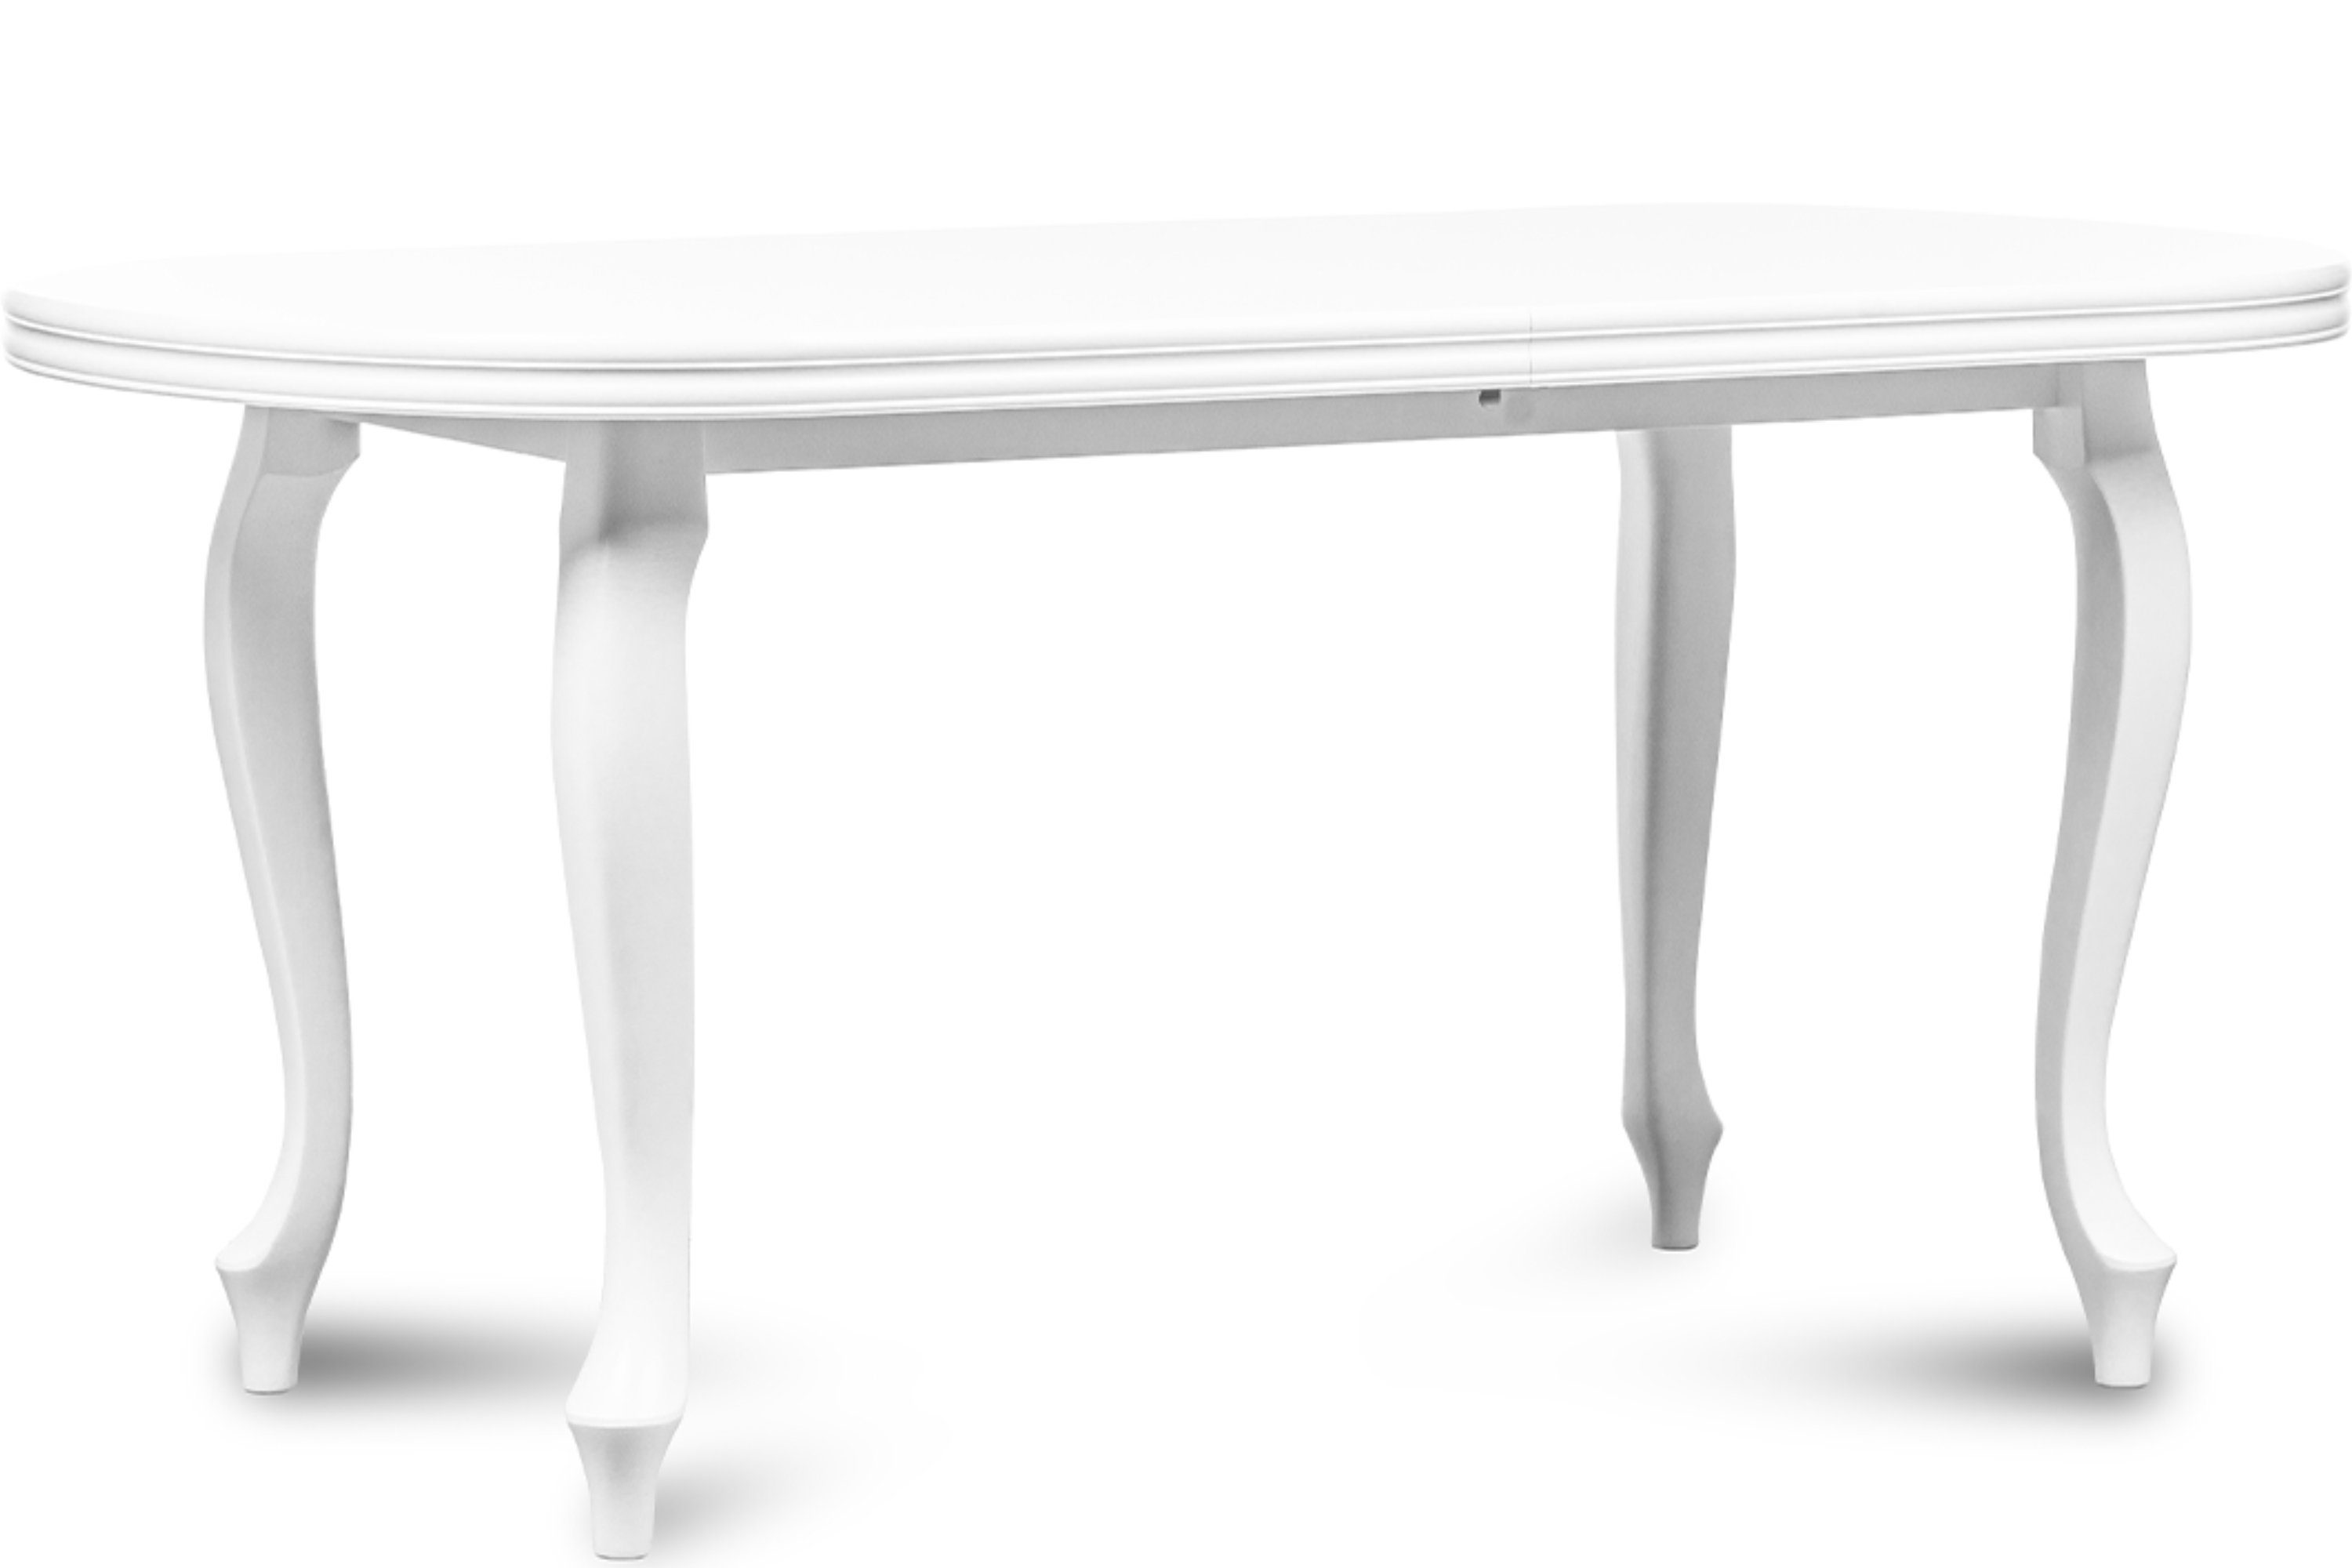 Konsimo Esstisch ALTIS Esszimmertisch Küchentisch, ausziehbar bis 220cm, oval weiß | weiß | weiß